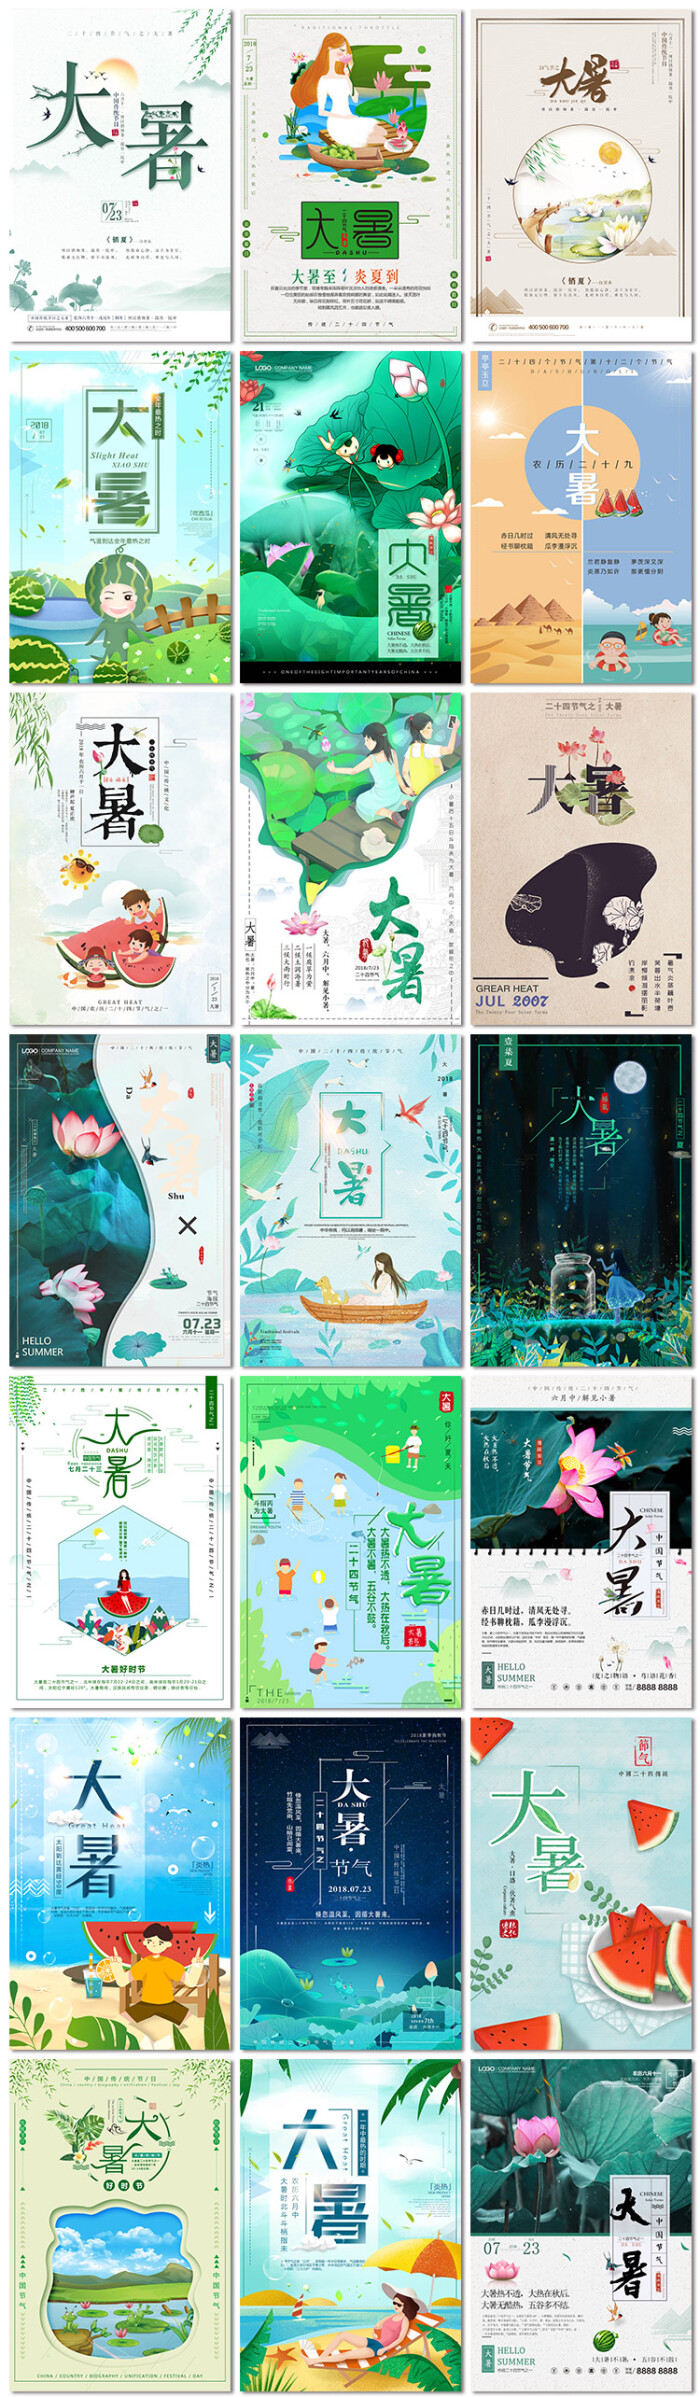 大暑二十四节气中国传统节日荷莲花手绘卡通海报psd模板素材设计